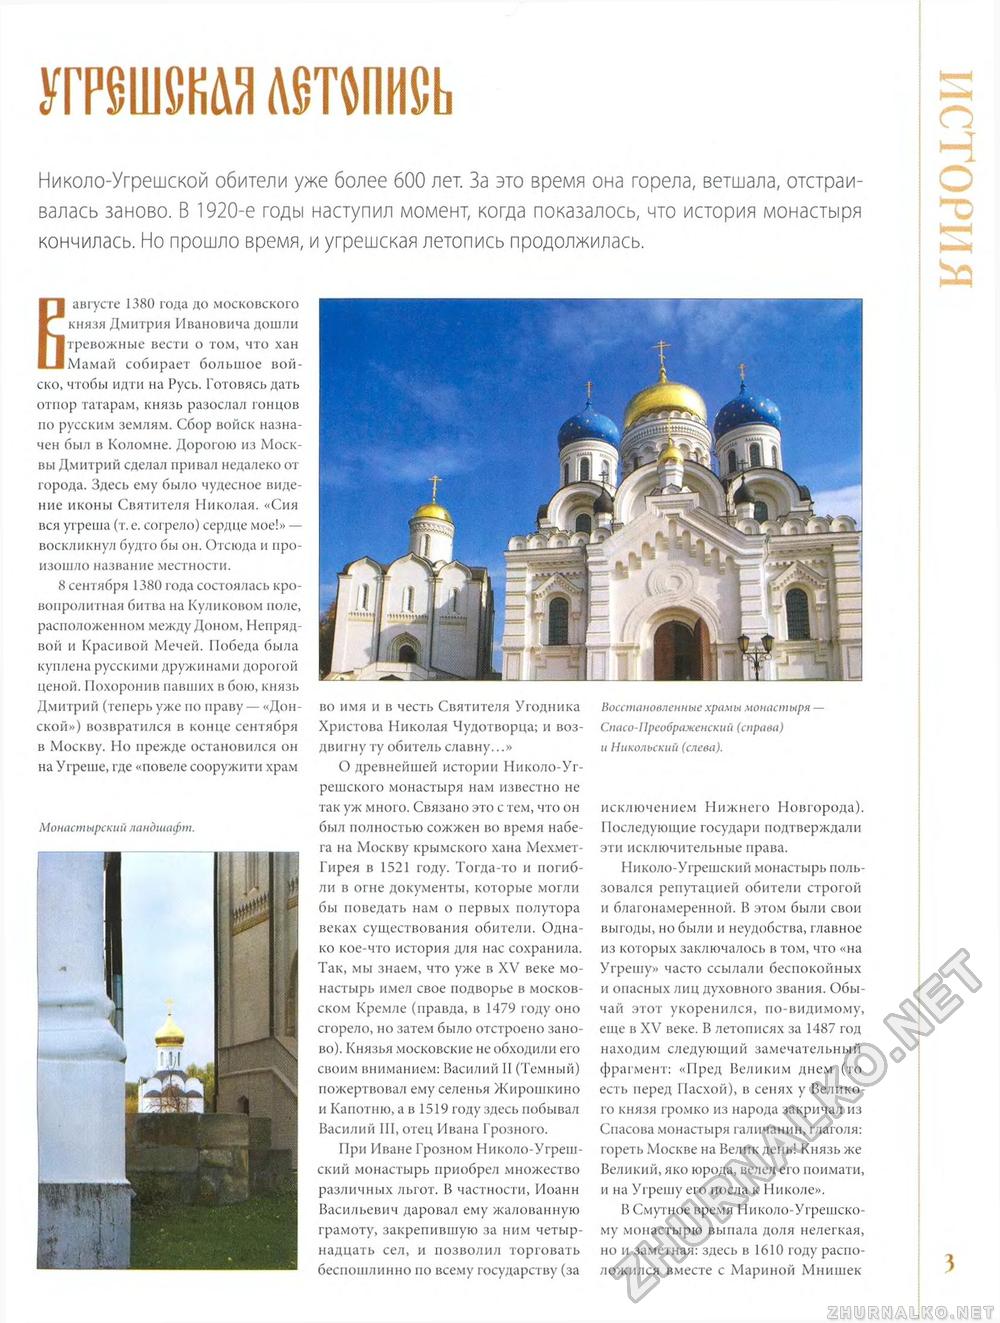 007. Николо-Угрешский монастырь, страница 3